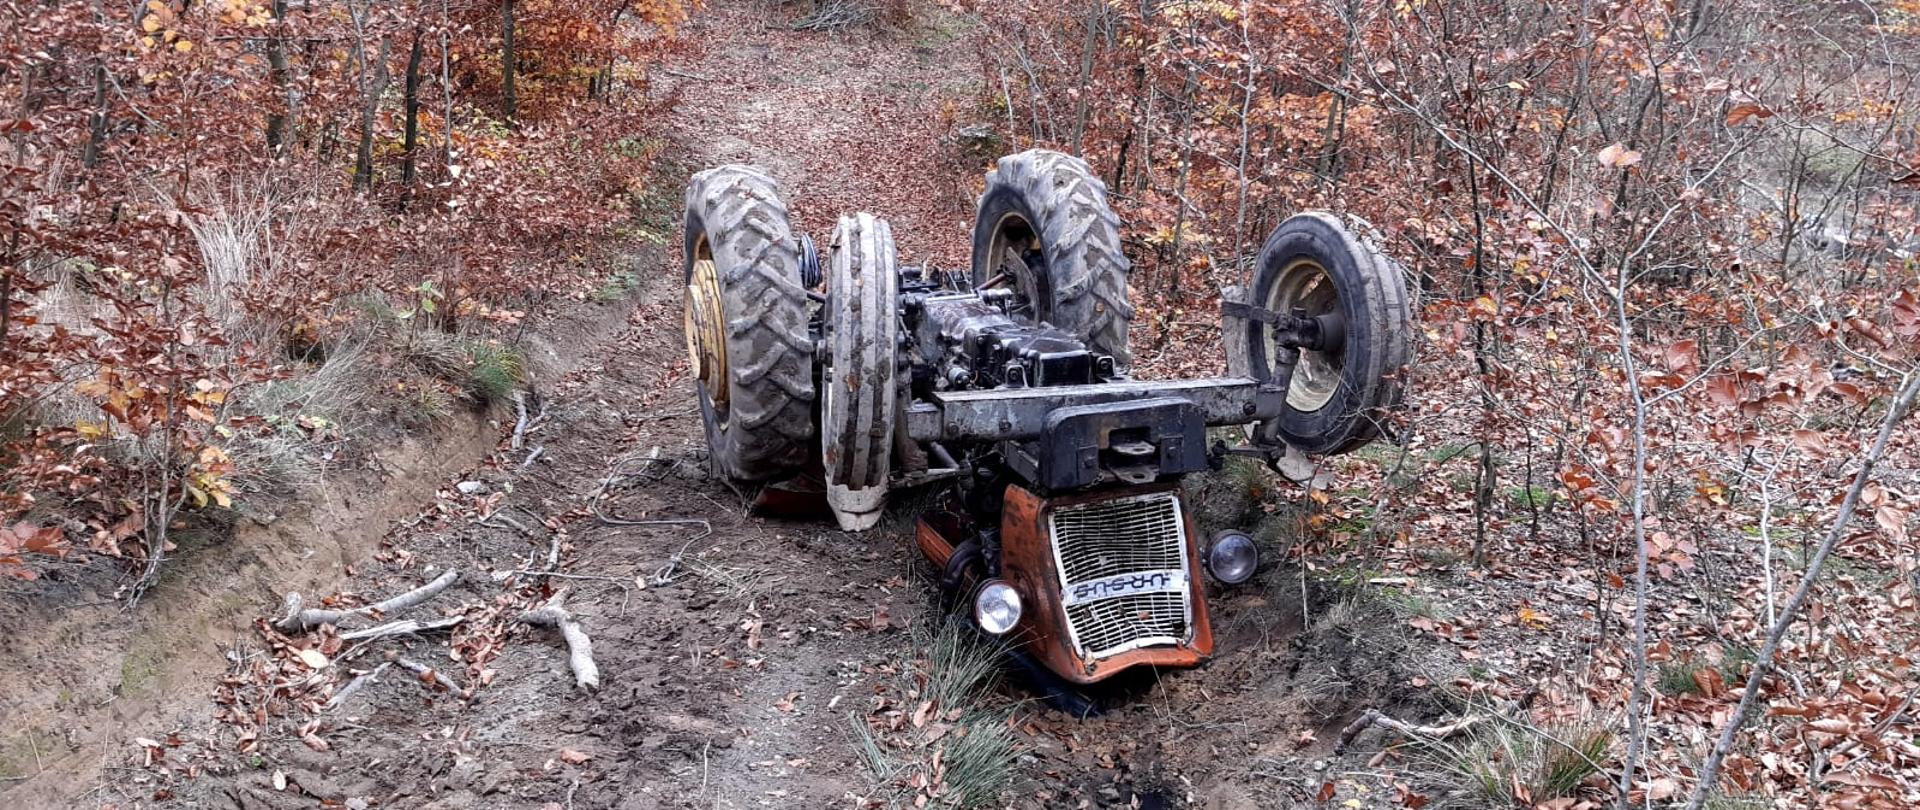 Na zdjęciu ciągnik rolniczy, który przygniótł traktorzystę. ciągnik leży kołami do góry na leśnej drodze. W tle zastępy Państwowej Straży Pożarnej oraz Ochotniczej Straży Pożarnej.